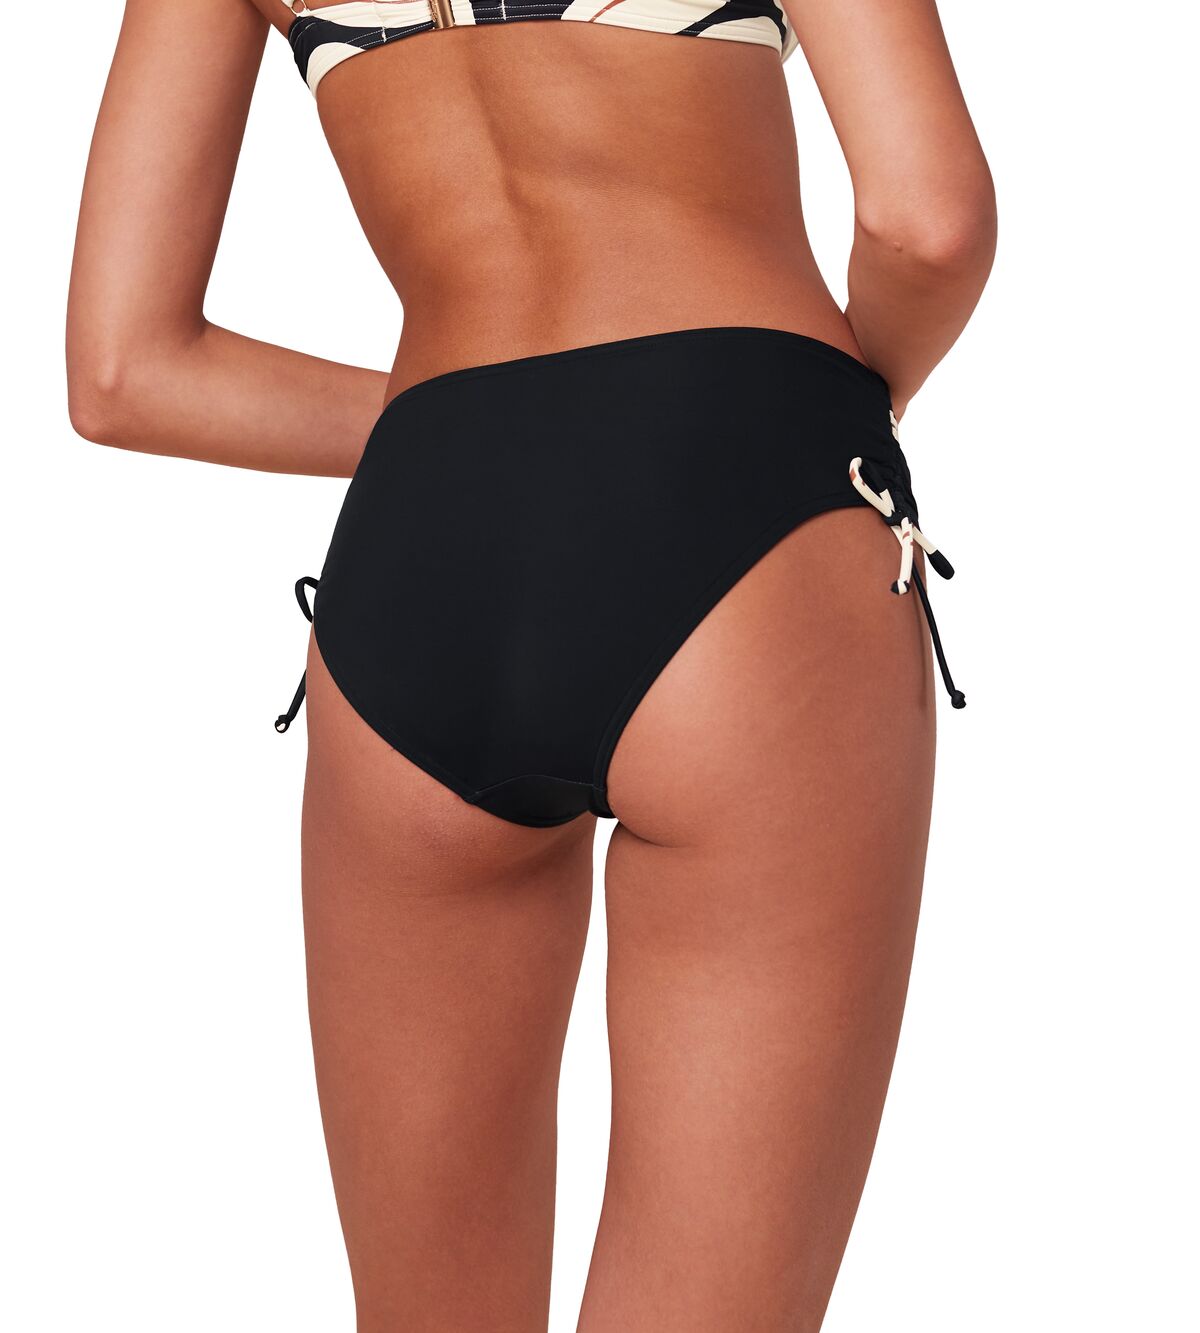 Triumph Summer Allure Midi bikini bottoms 3 Shaws Department Stores